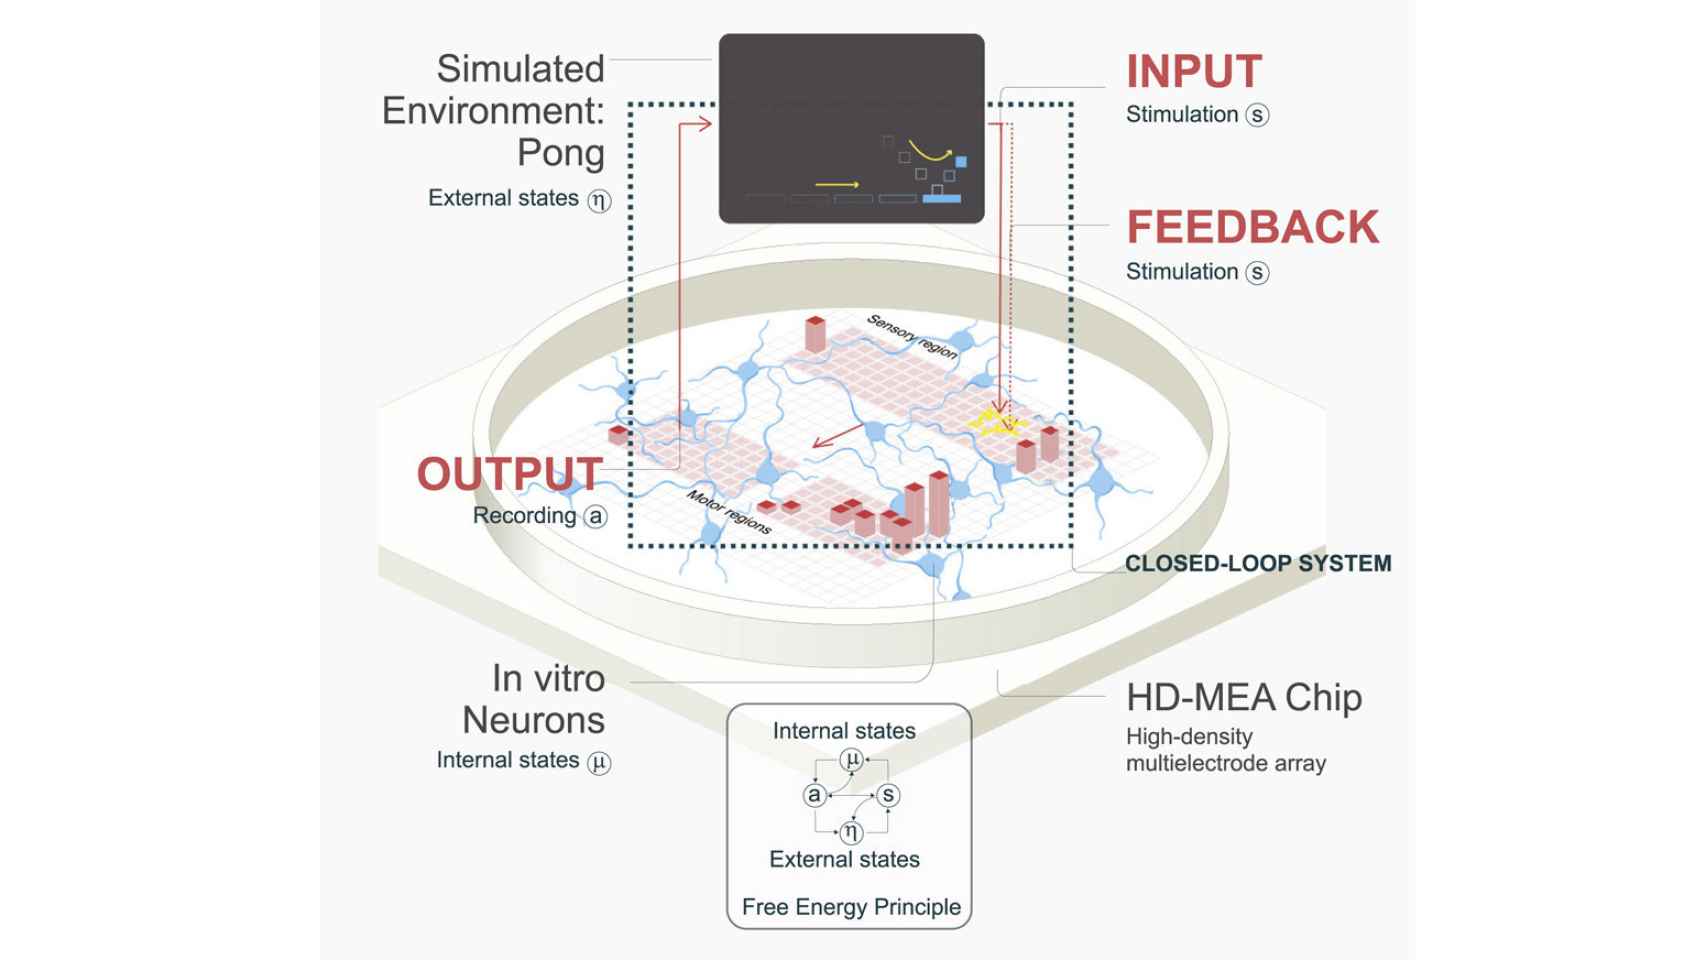 Neuronas jugando al Pong